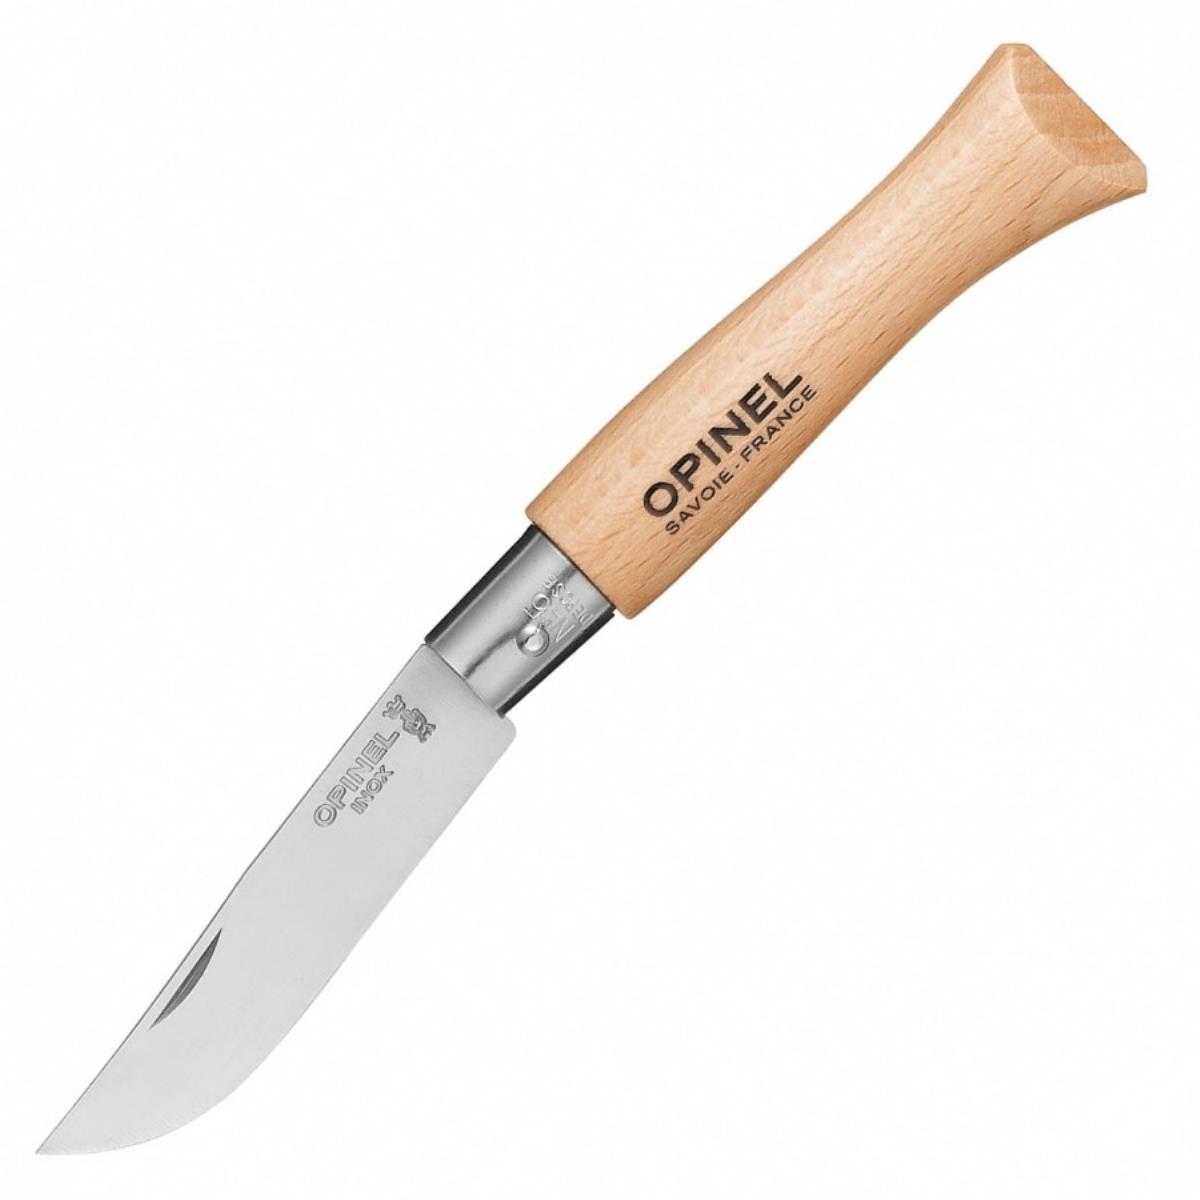 Нож №5 VRI Tradition Inox (нержавеющая сталь, рукоять бук, длина клинка 6 см) 0010729 OPINEL набор столовых ножей opinel n°125 рукоять дерево нержавеющая сталь